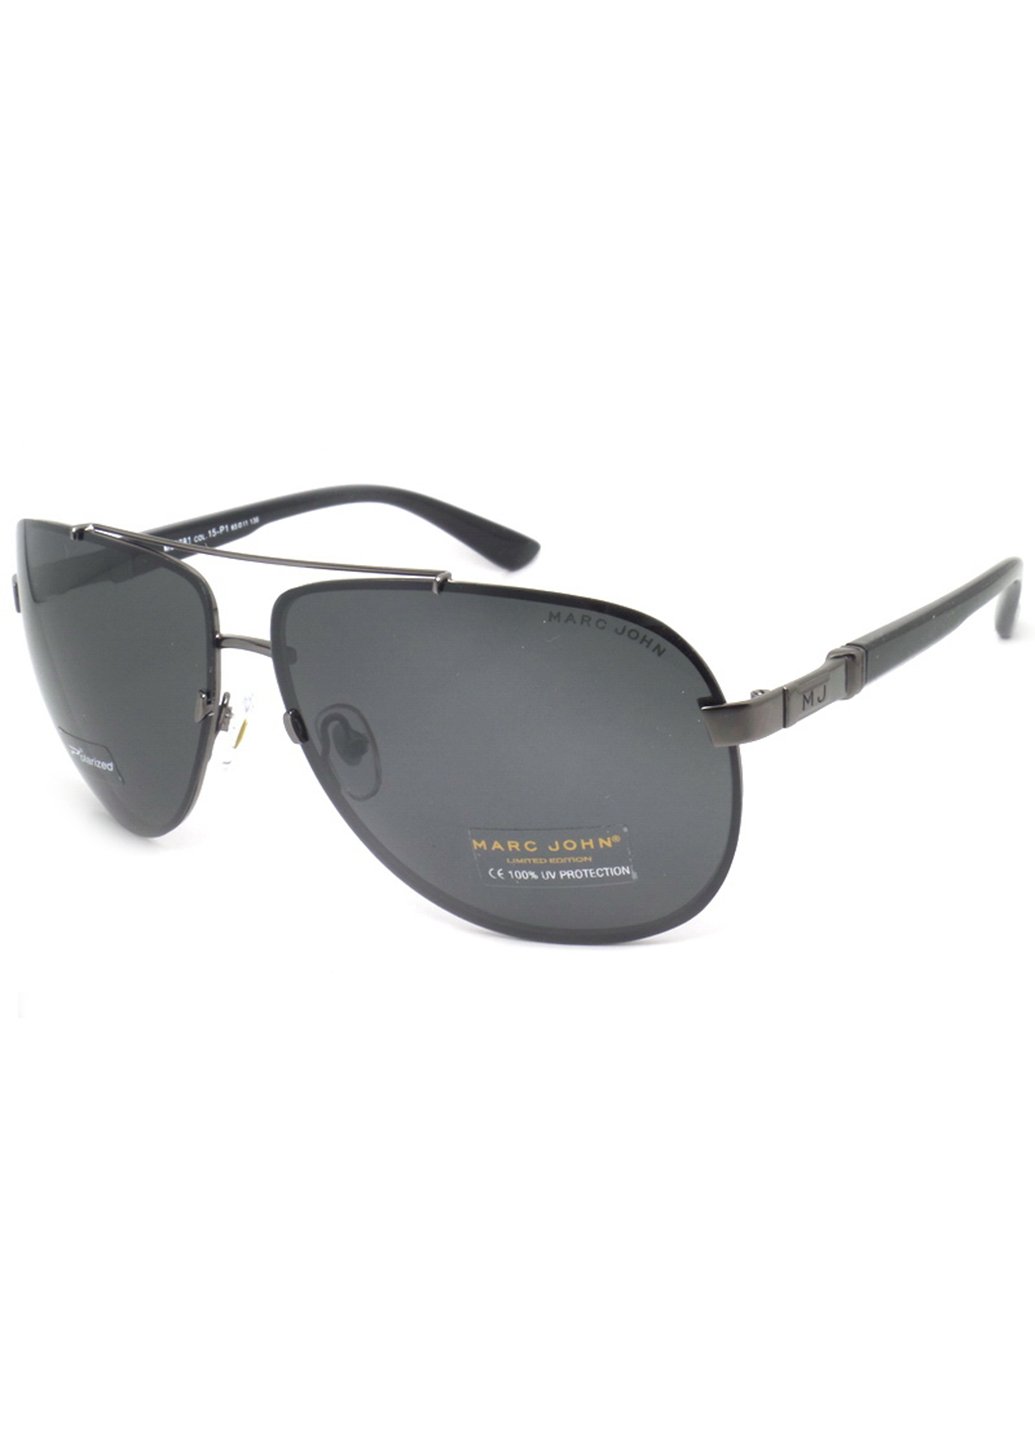 Купить Мужские солнцезащитные очки Marc John с поляризацией MJ0781 190018 - Черный в интернет-магазине